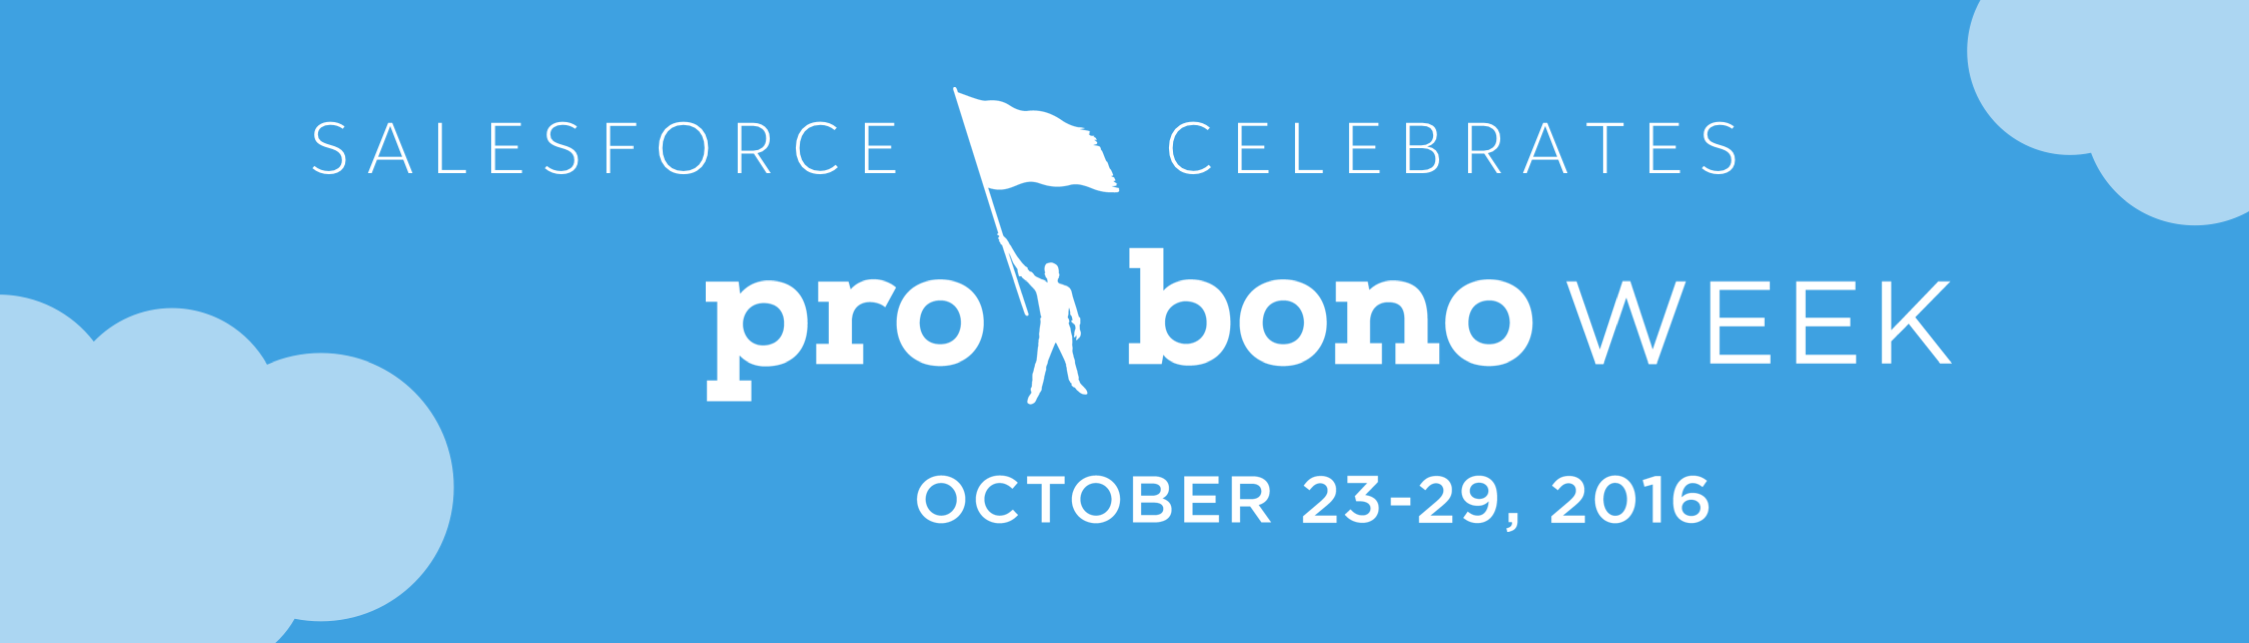 Celebrating Pro Bono Week